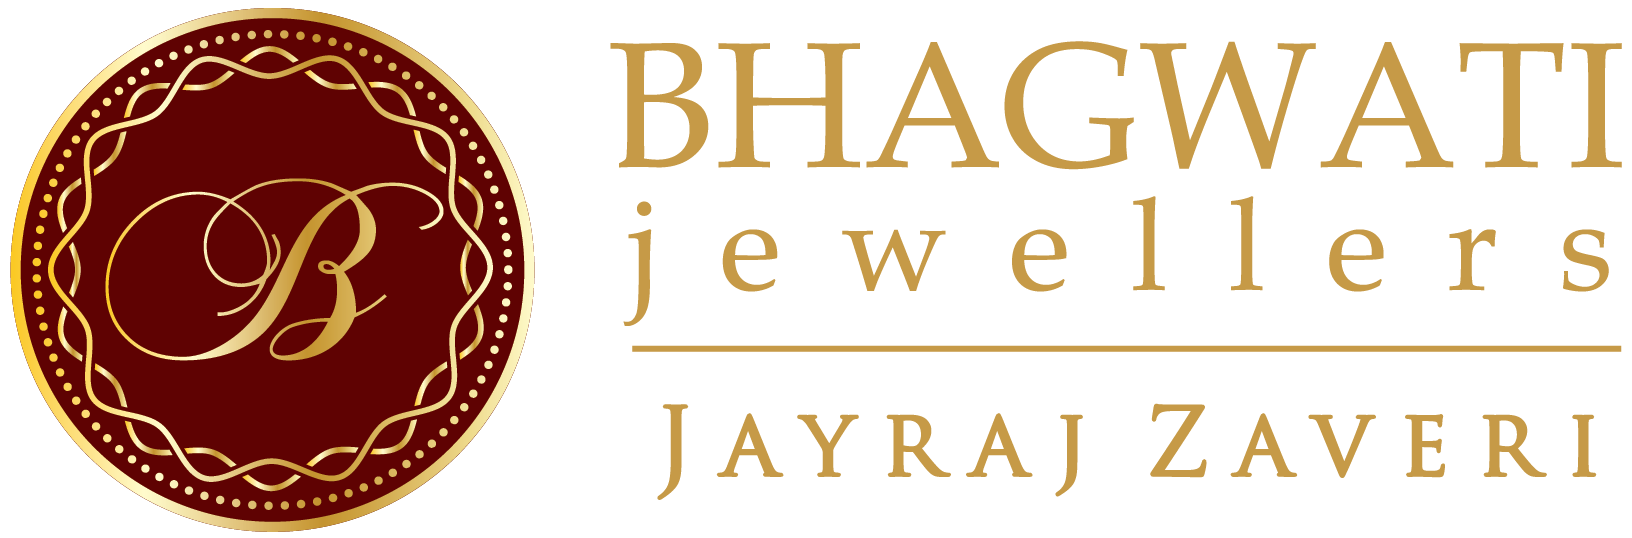 Bhagwati Jewellers - Jayraj Zaveri | Premium Bridal & Wedding Jewellery Showroom in Ahmedabad for Gold, Diamond, Platinum & Jadtar Collections.